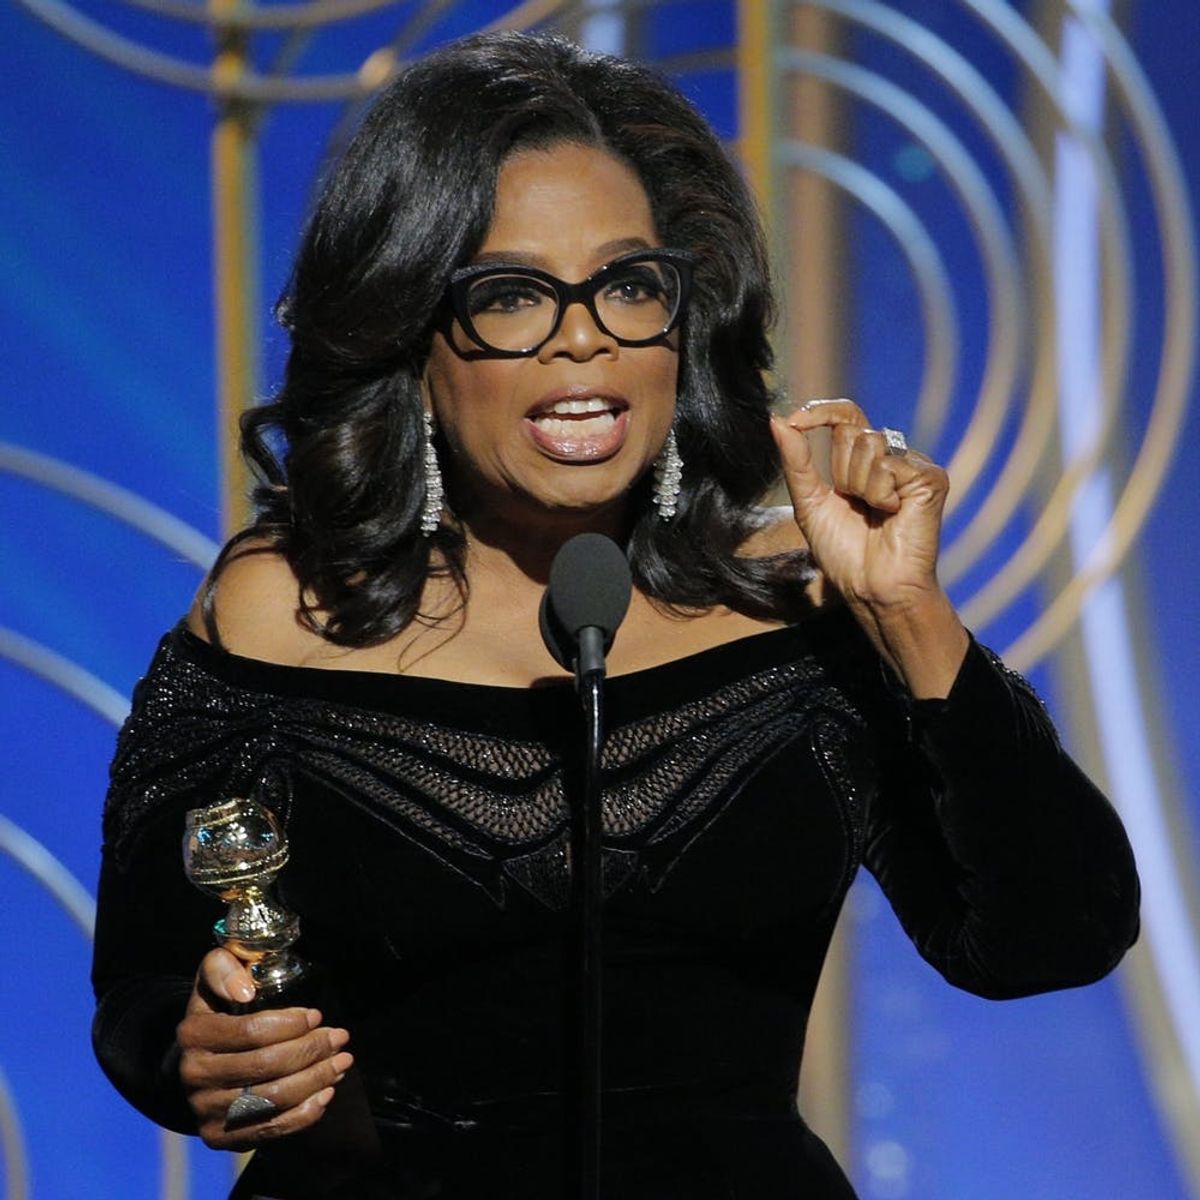 Oprah Winfrey’s Golden Globes 2018 Speech Was the Speech to End All Awards Show Speeches